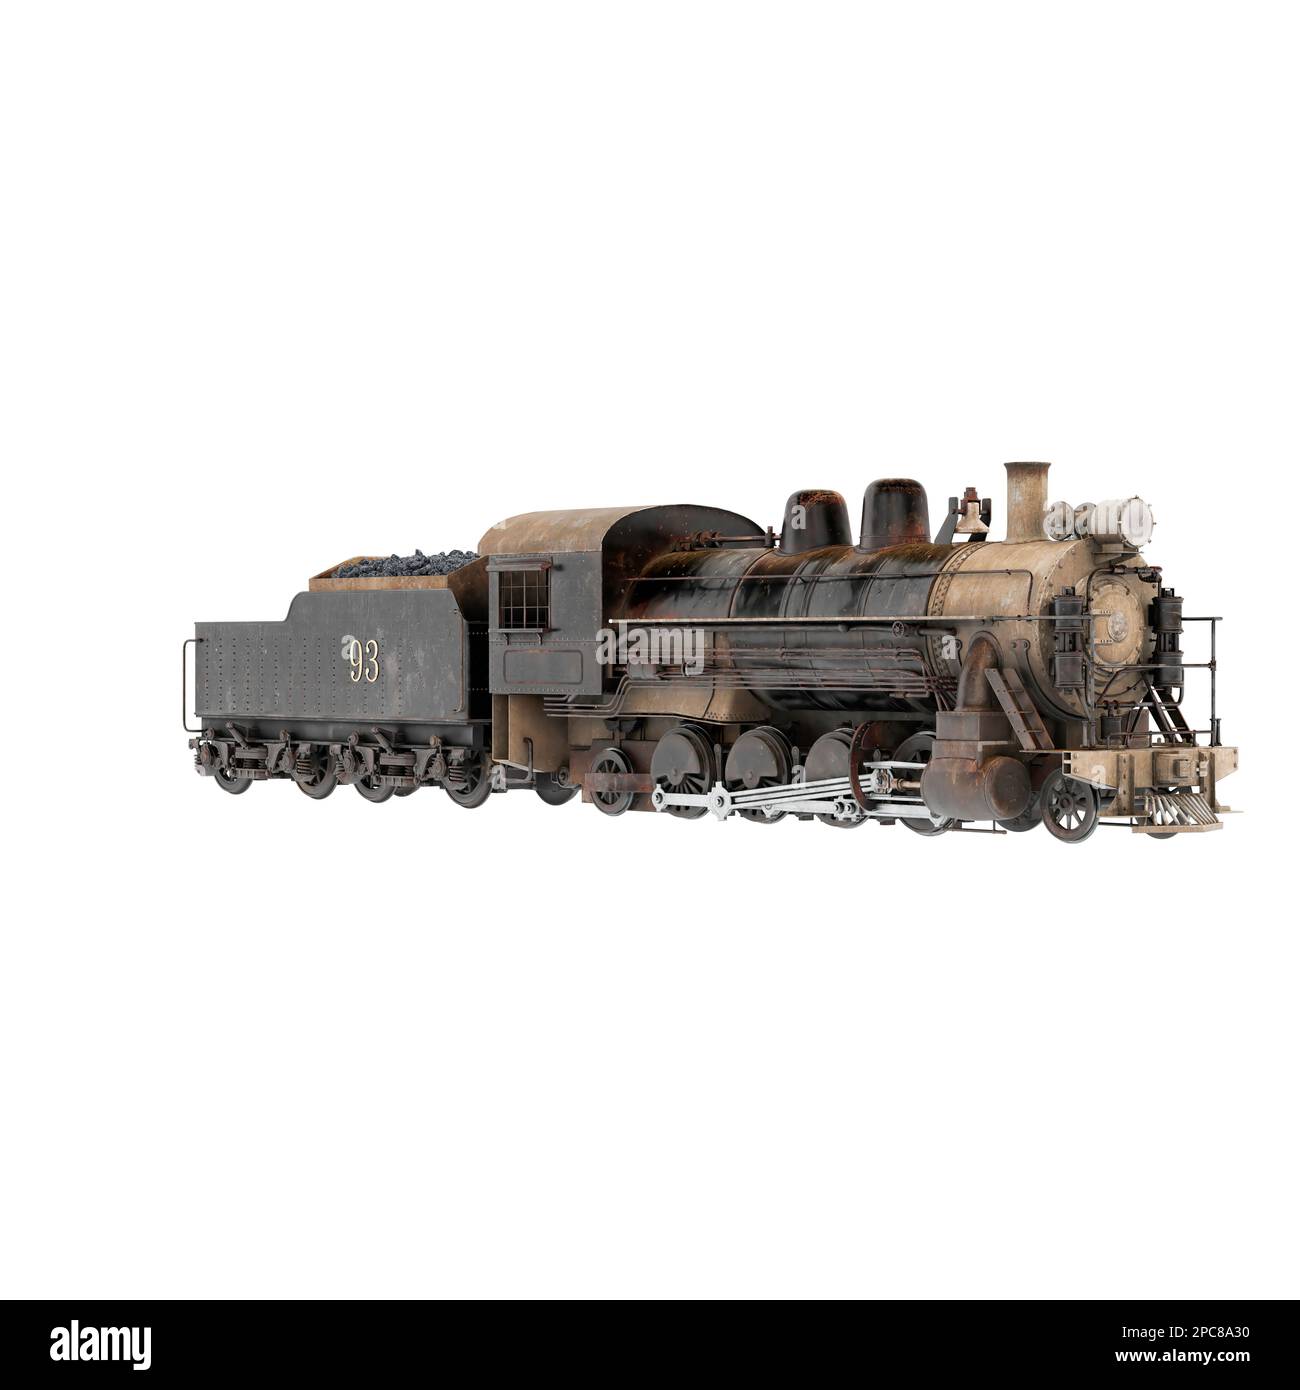 Una locomotiva a vapore classica è parcheggiata su una serie di binari su uno sfondo bianco, creando un contrasto sorprendente Foto Stock